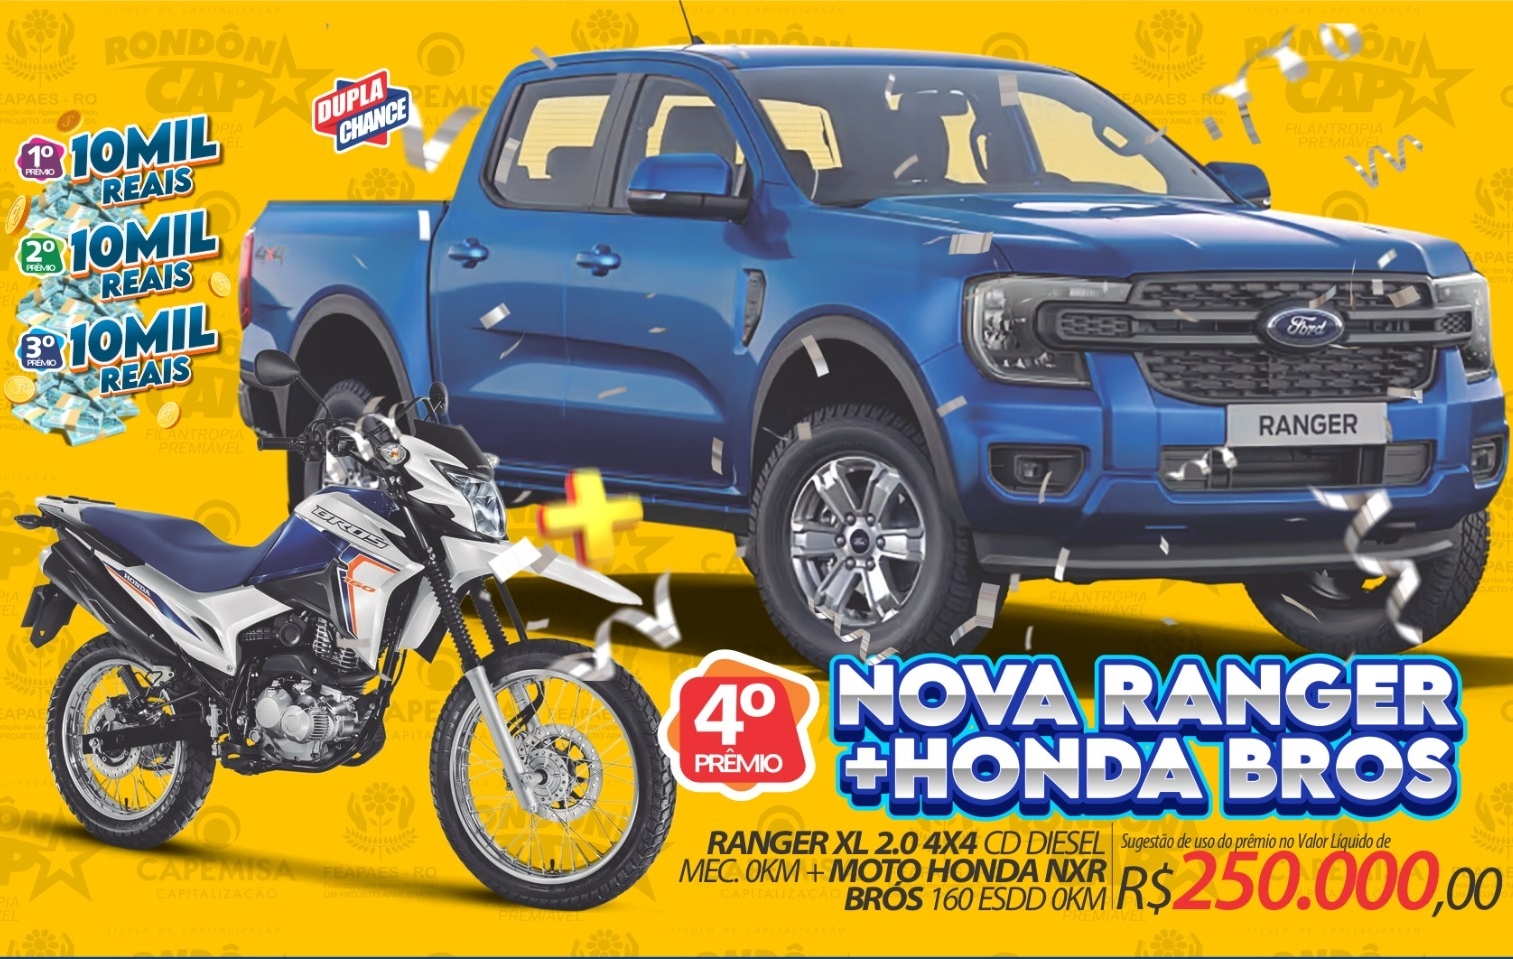 RONDÔNCAP: Especial de junho com Nova Ranger + uma Honda Brós no valor total de R$ 250mil